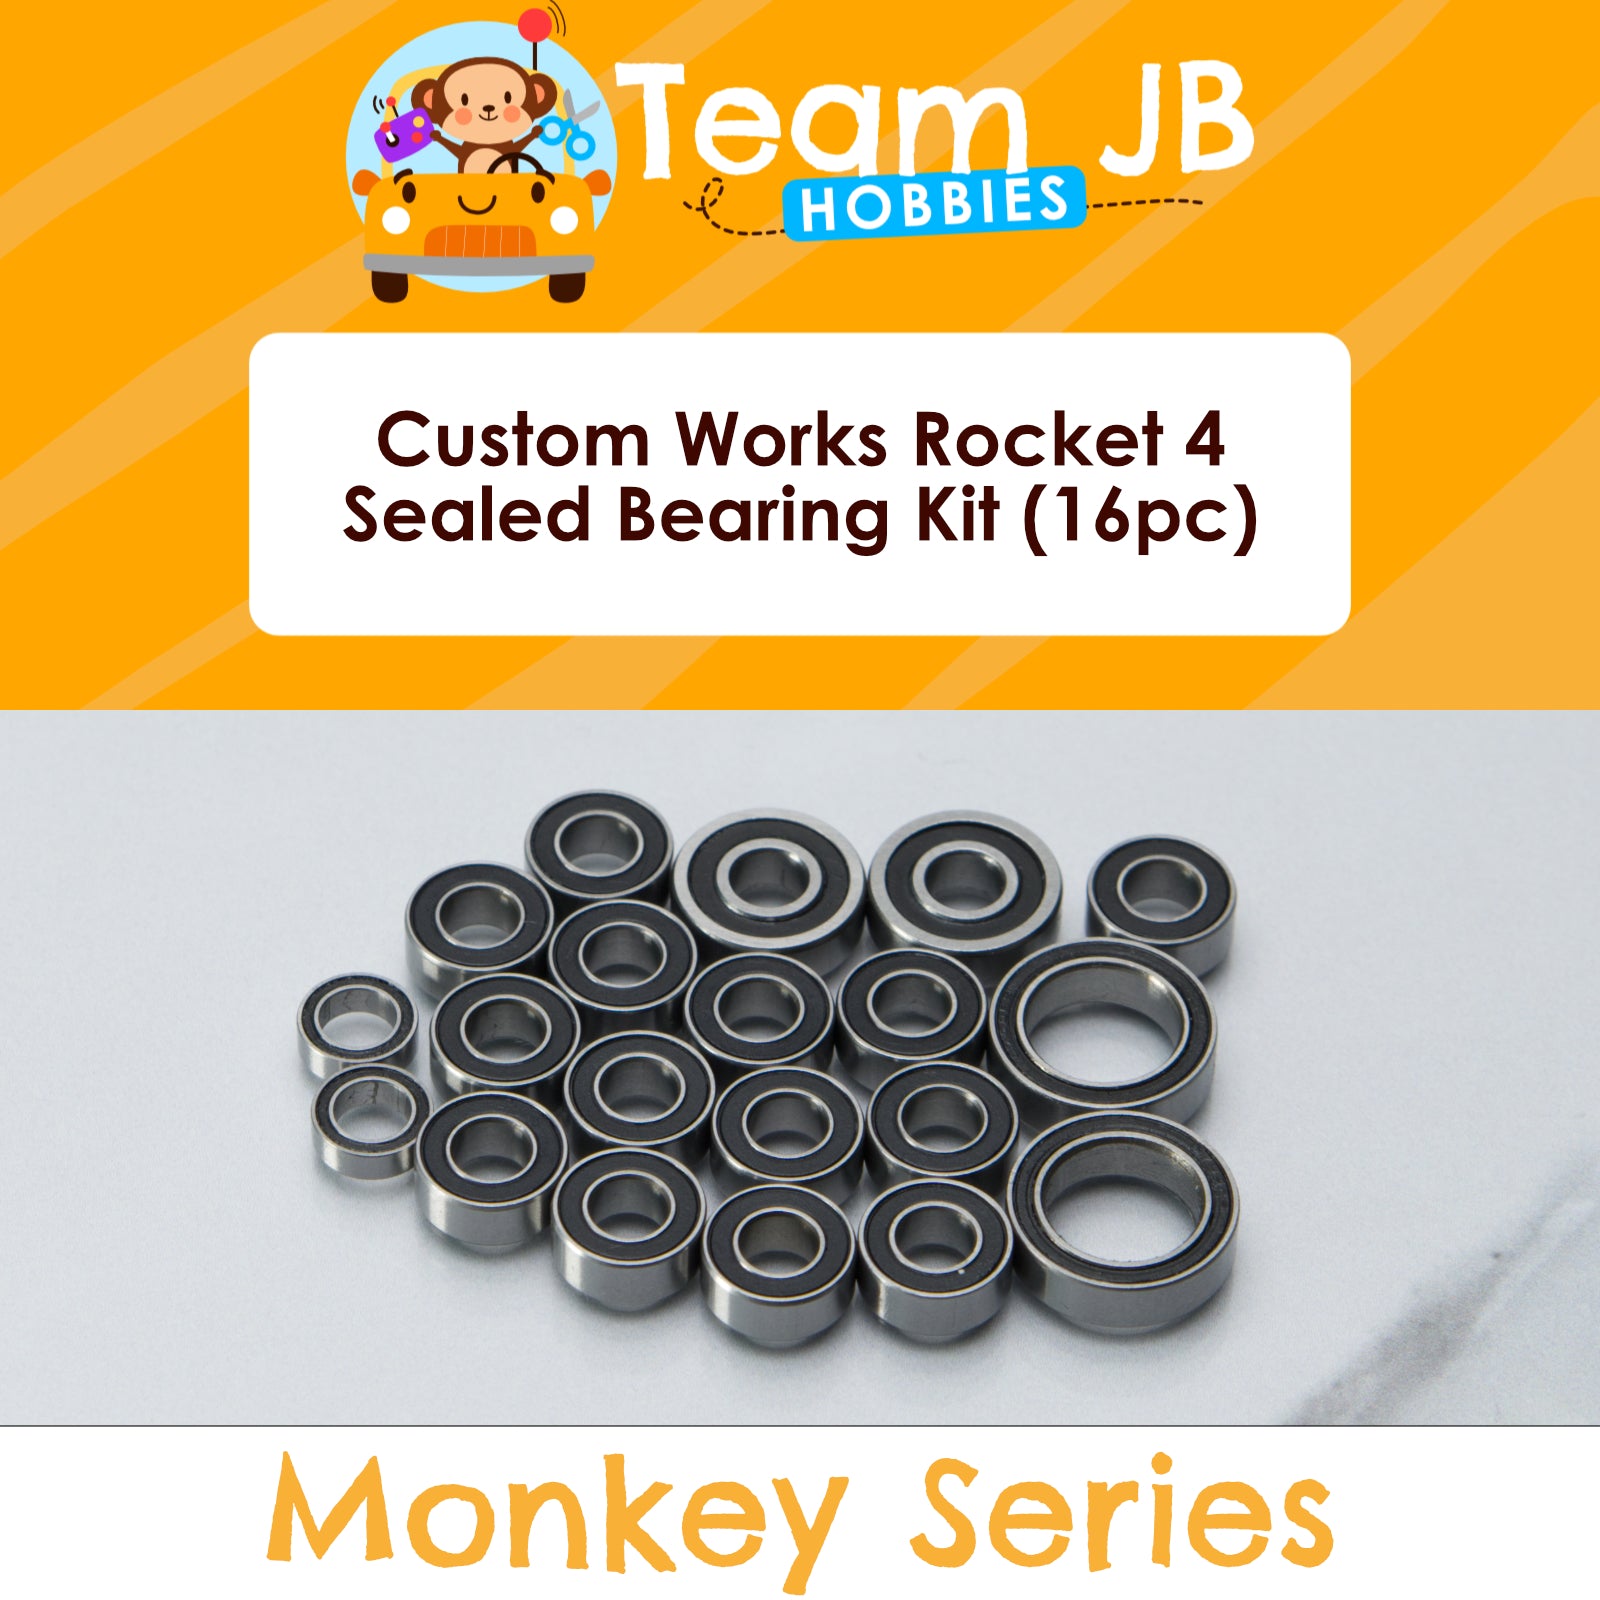 Custom Works Rocket 4 - Sealed Bearing Kit